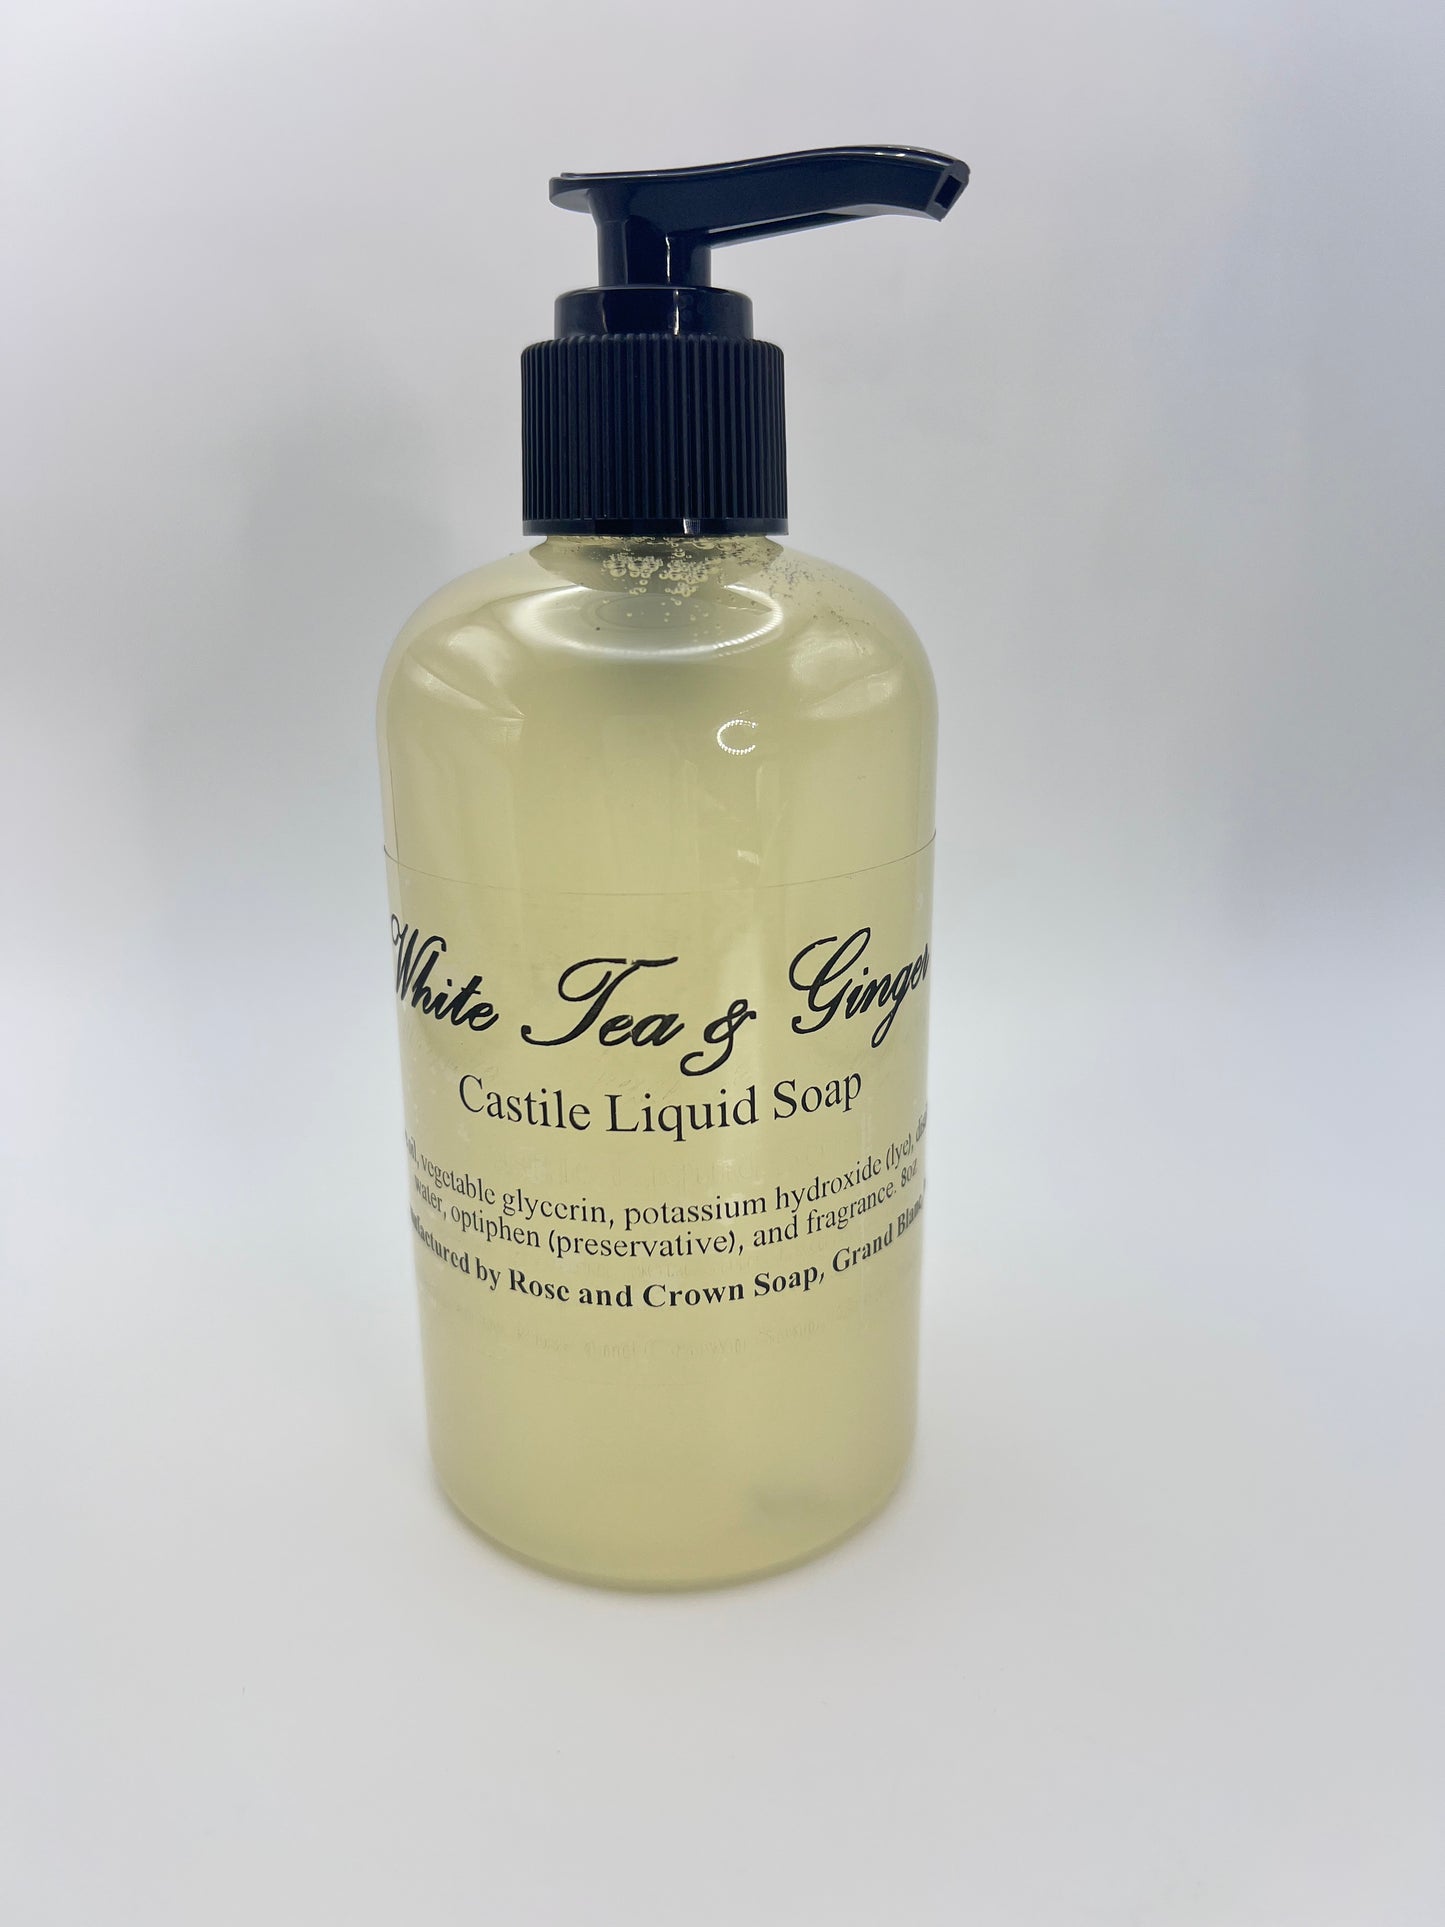 Castile Liquid Soap